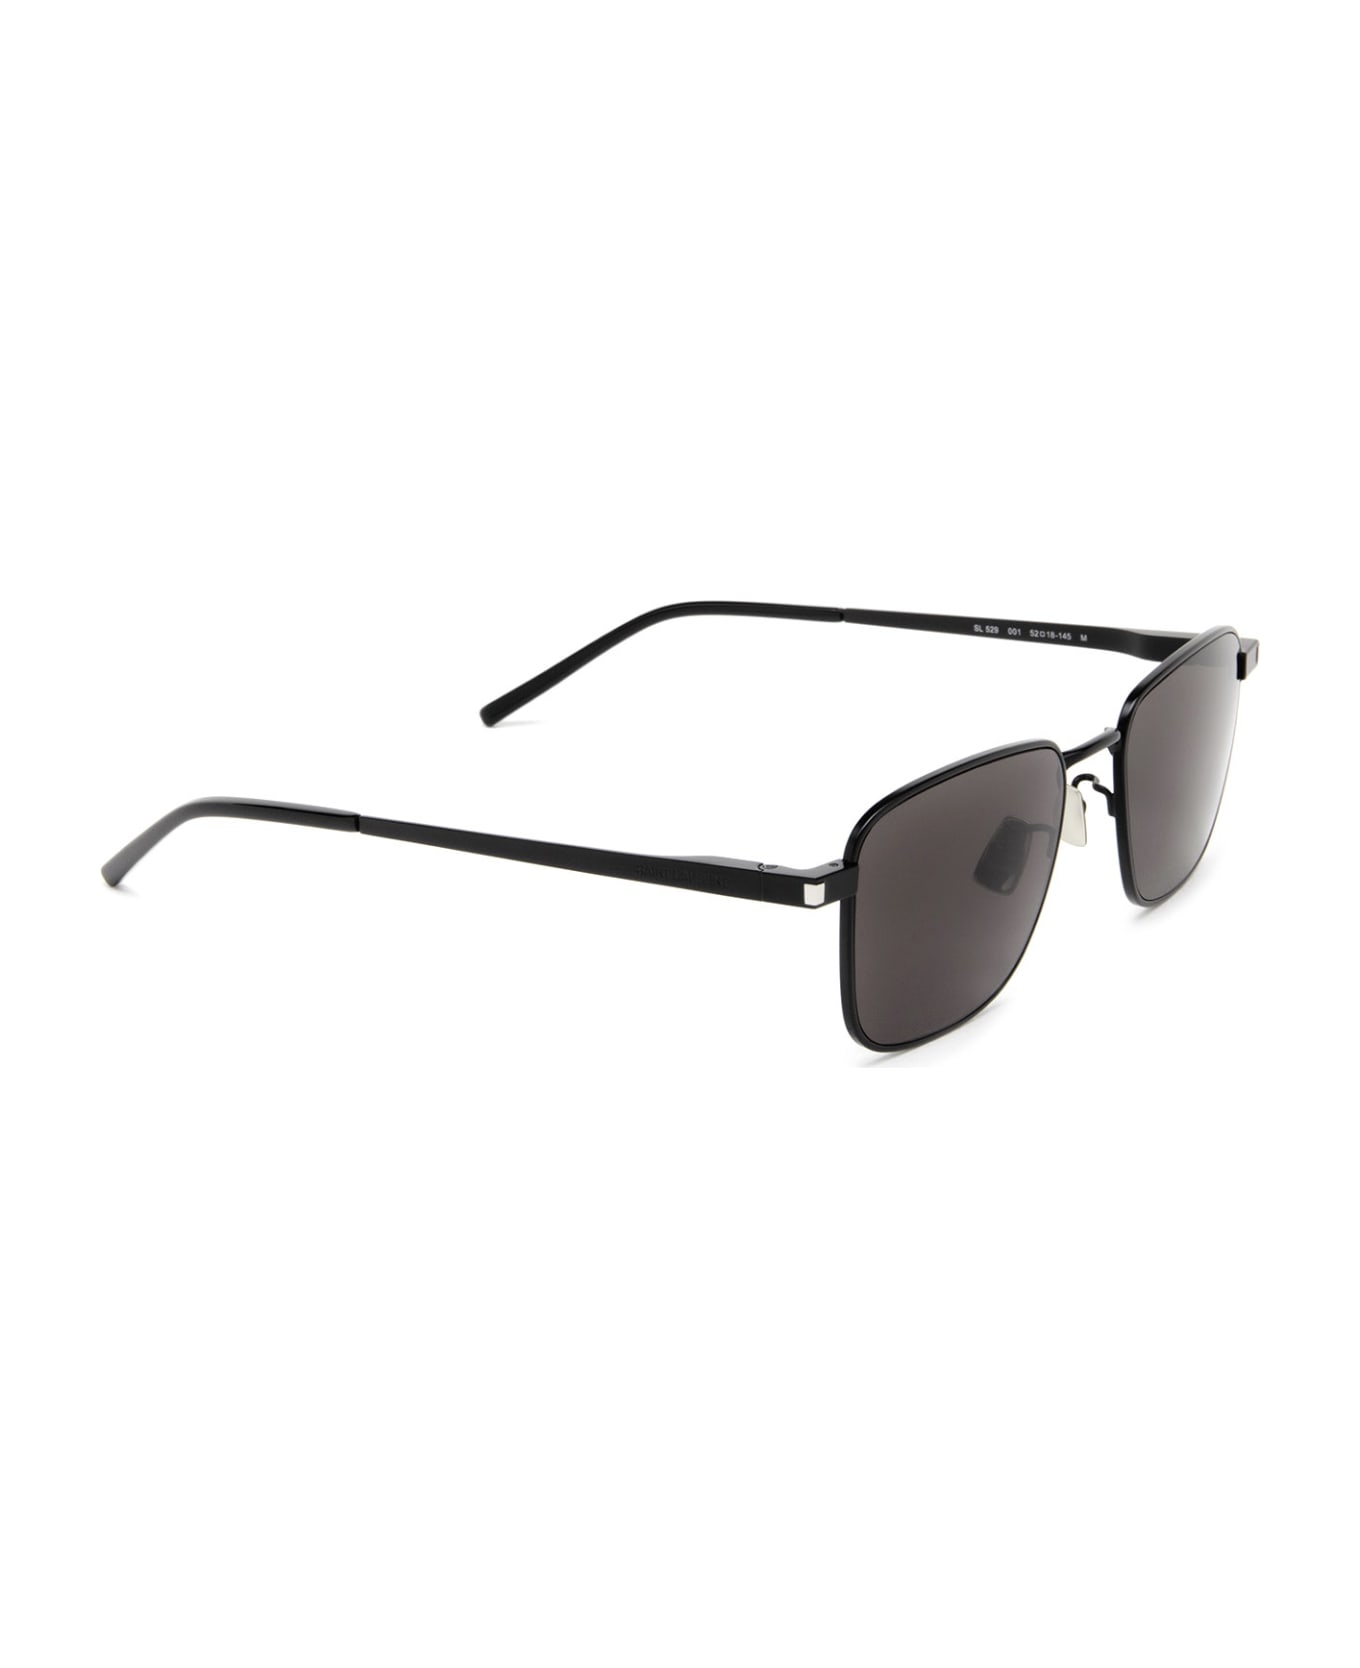 Saint Laurent Eyewear Sl 529 Black Sunglasses - Black